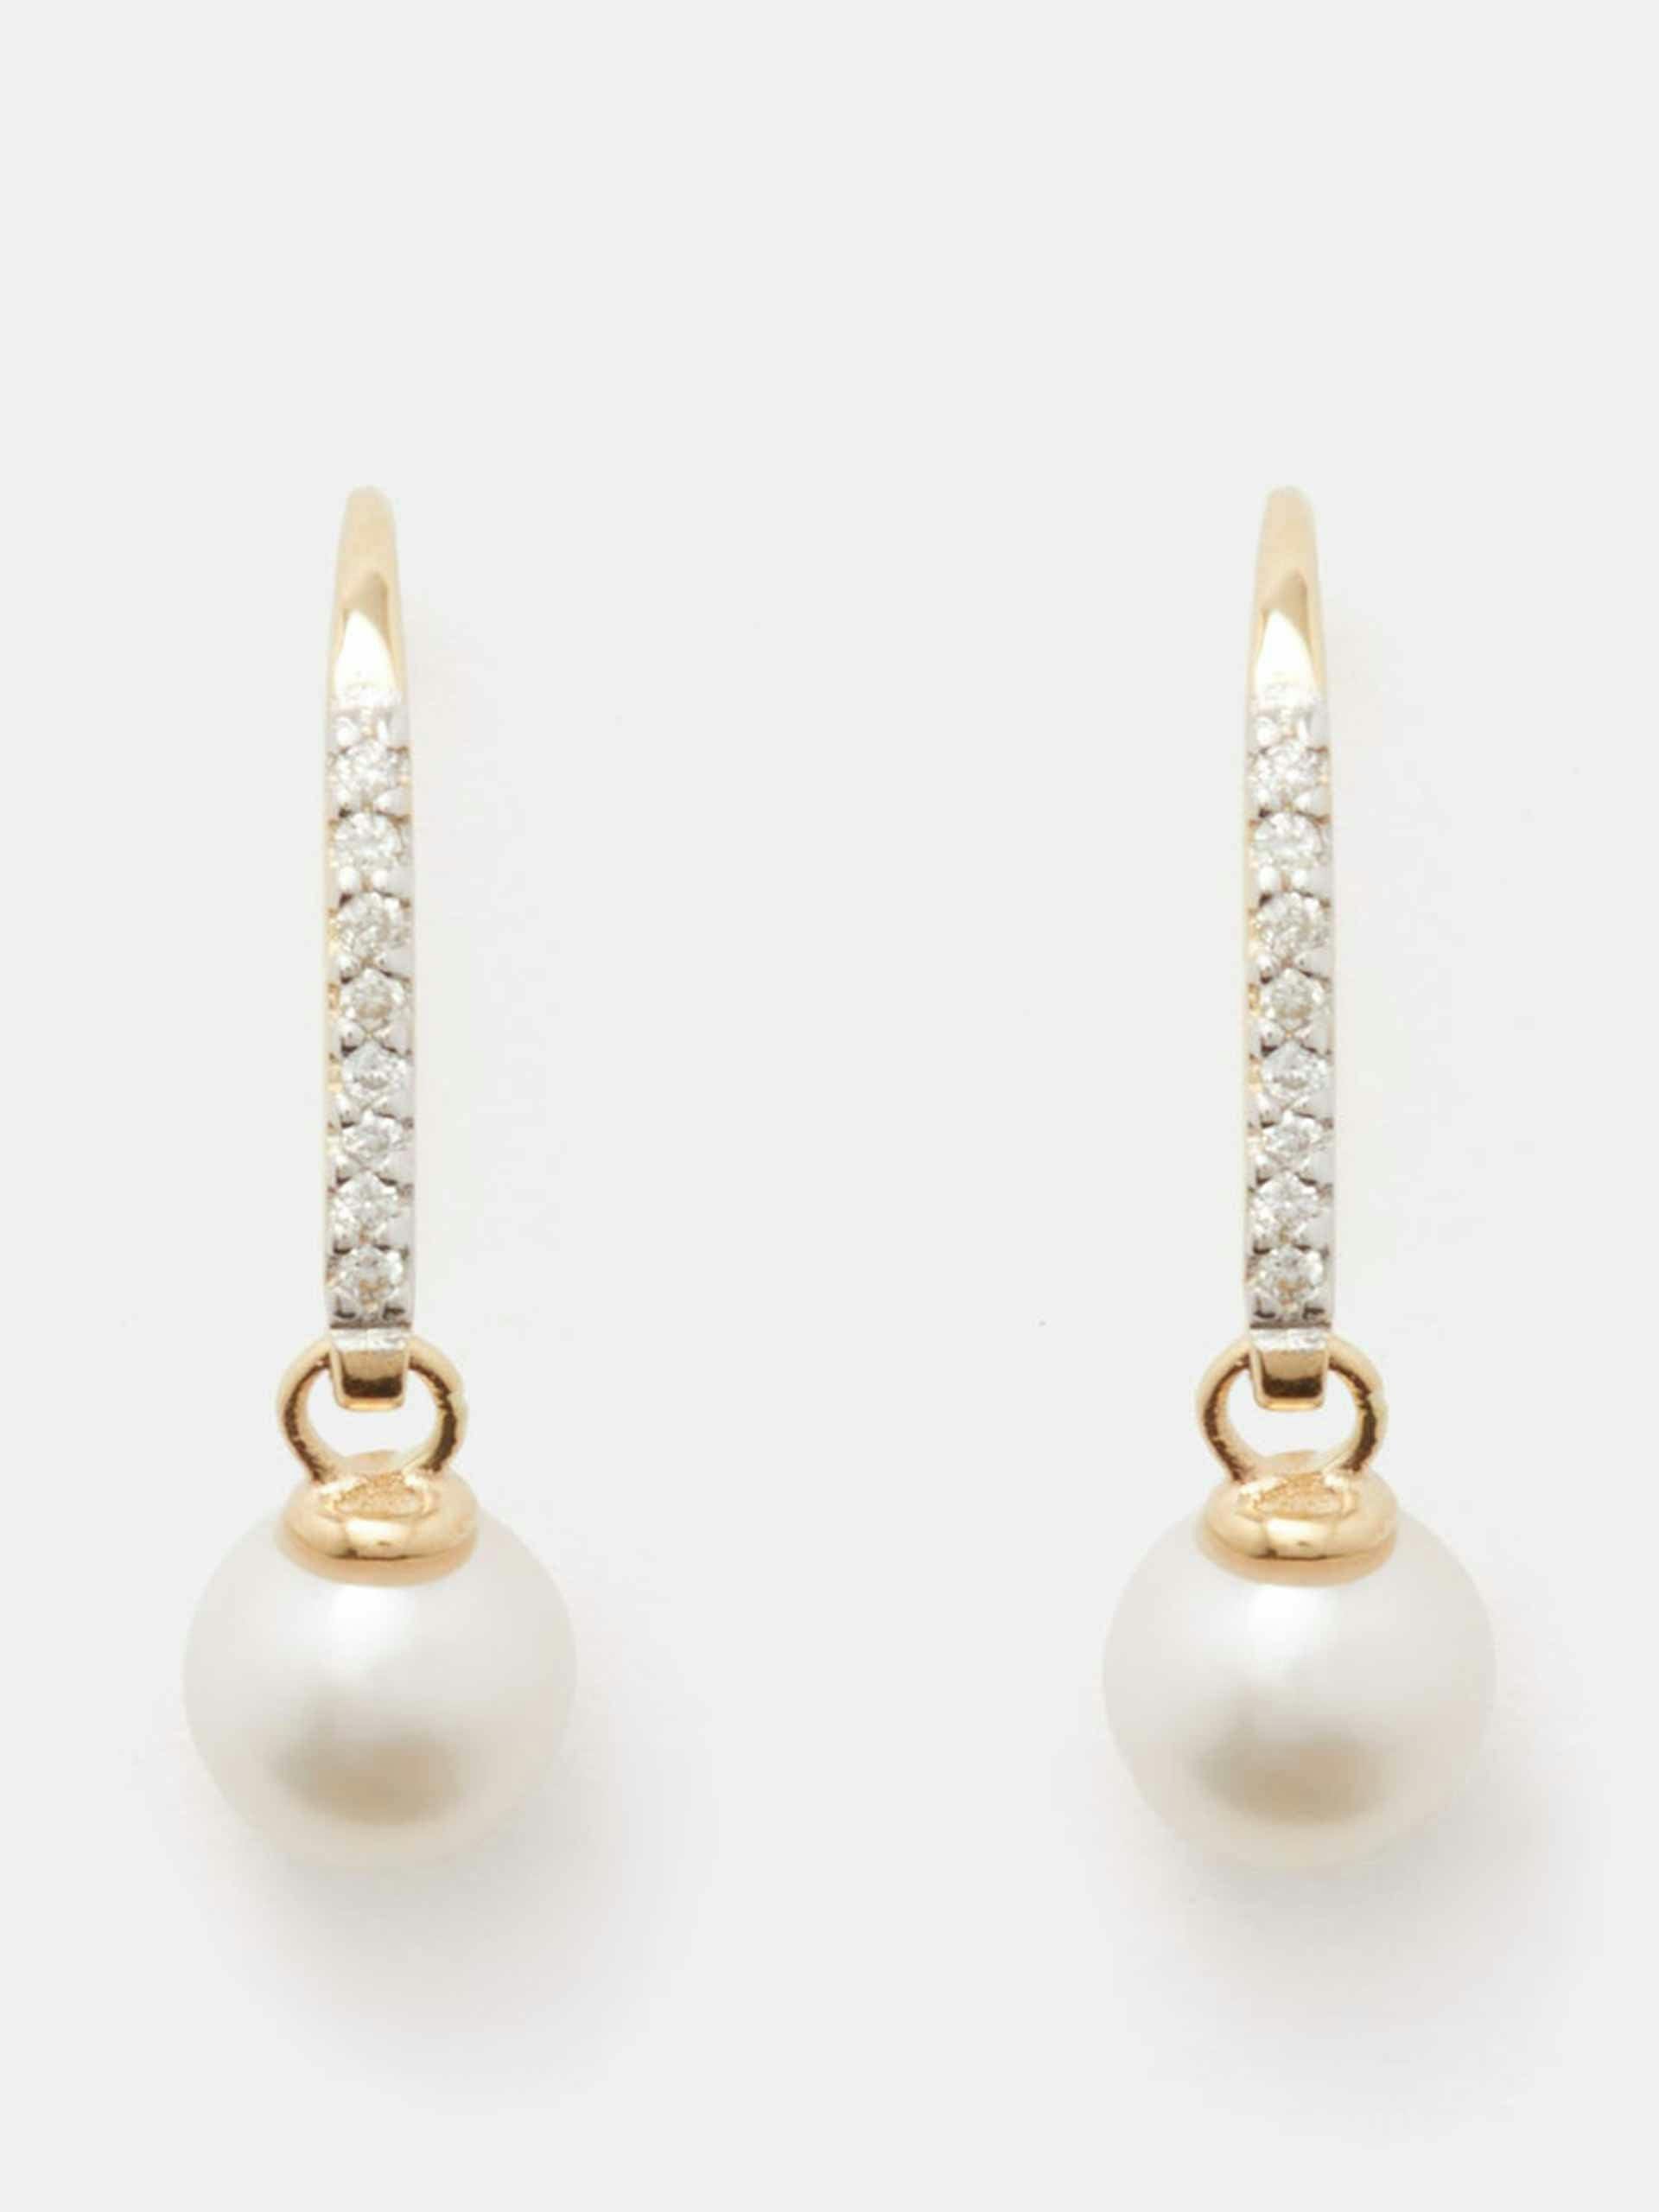 Diamond, pearl & 14kt gold earrings